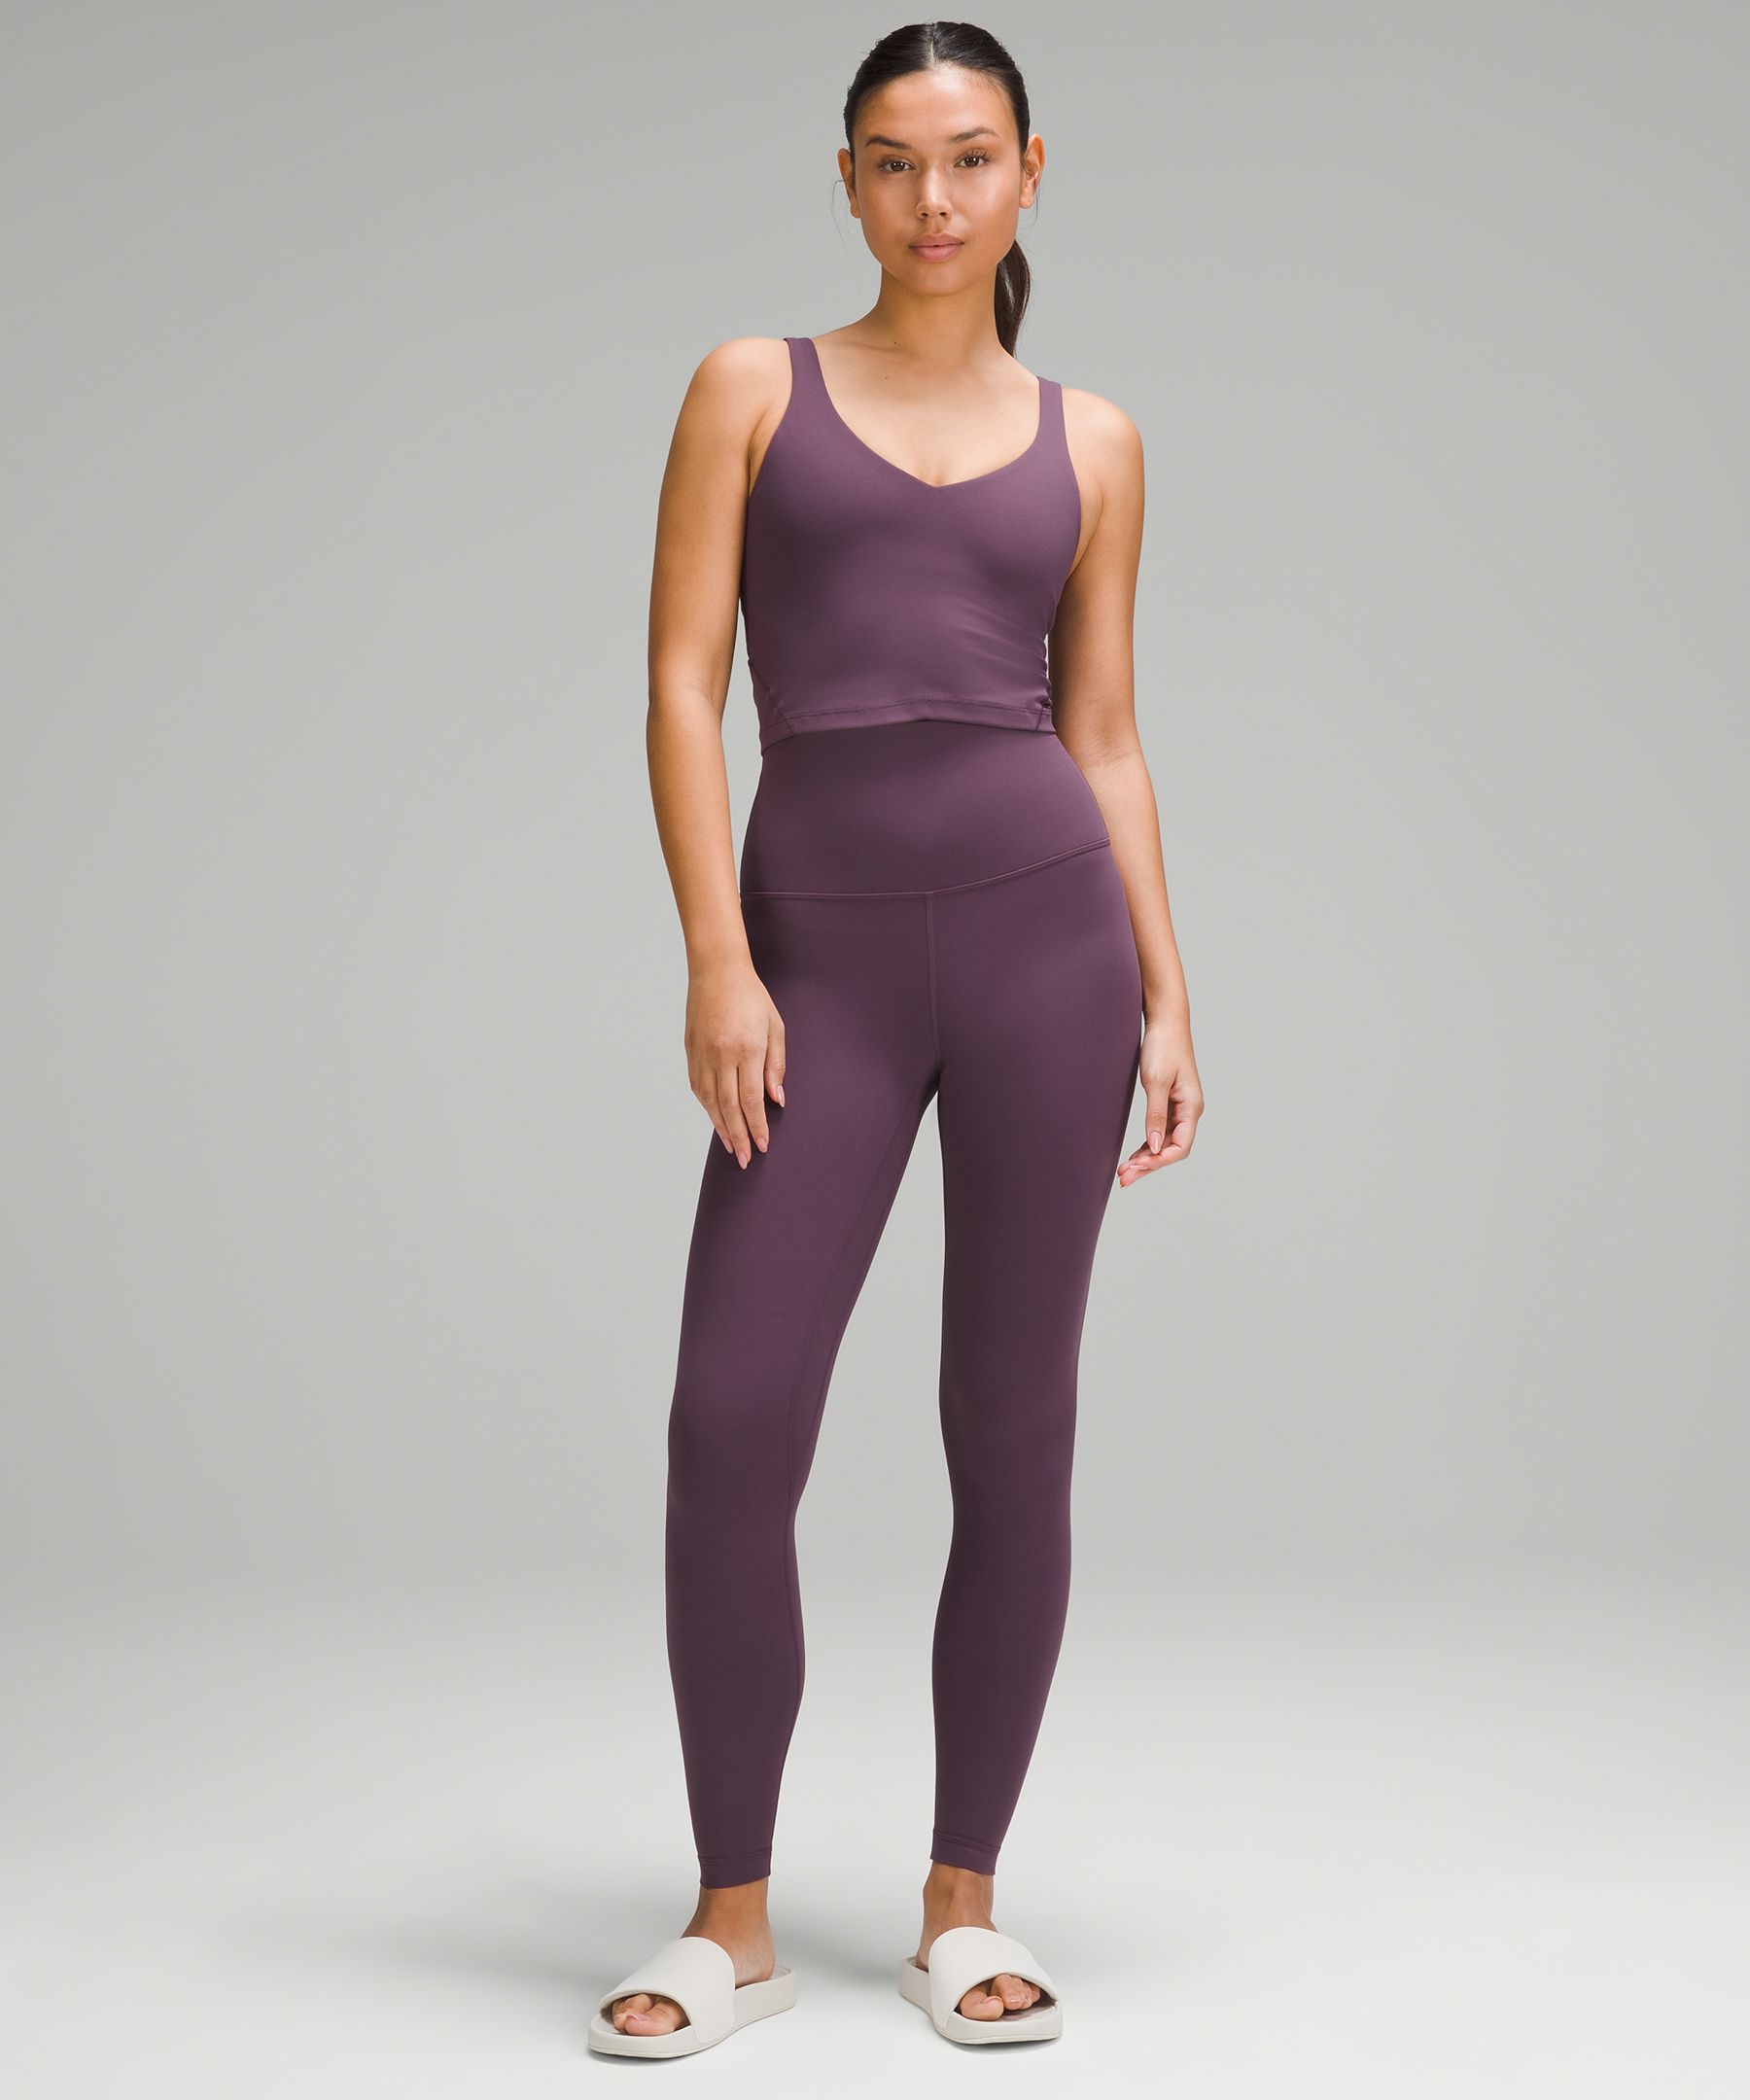 Women's Purple Clothes